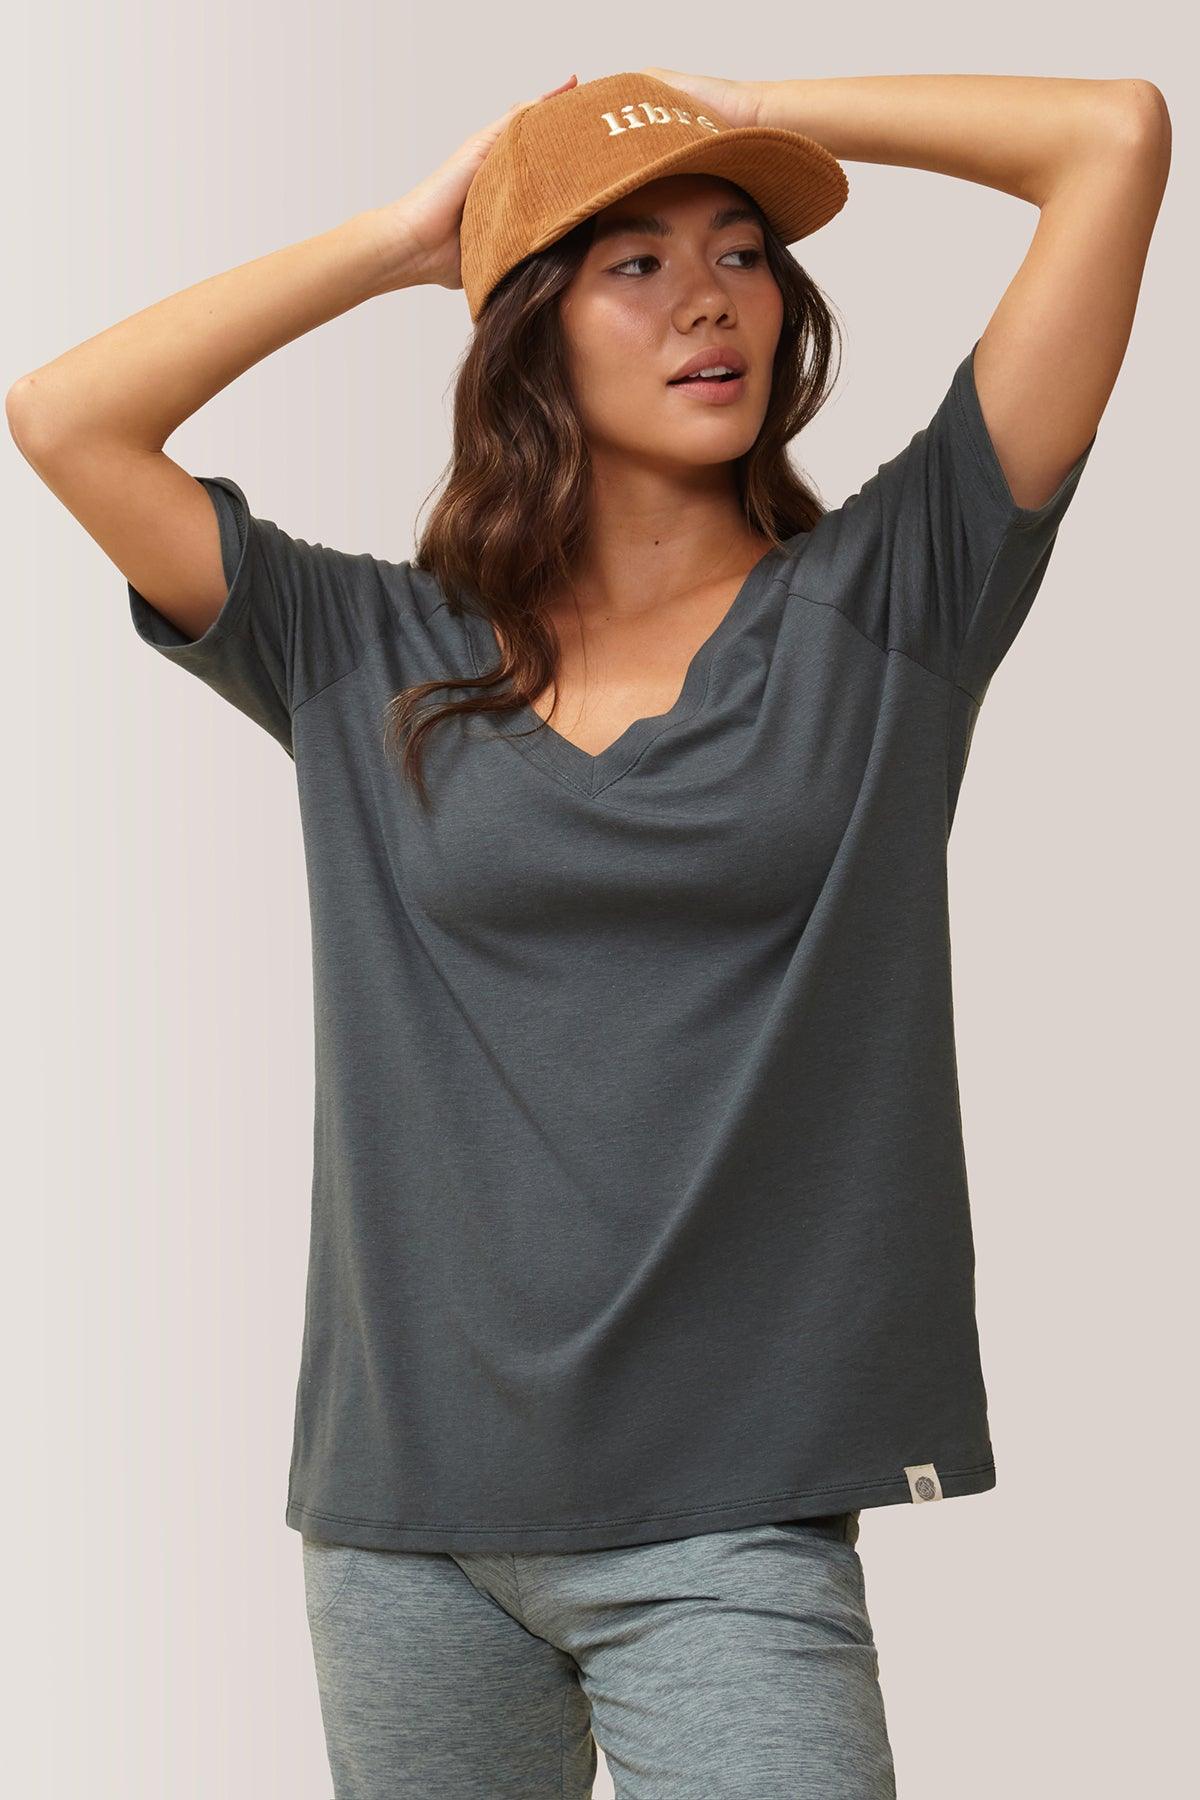 Femme vêtue du t-shirt blissful flow par Rose Boreal. / Women wearing the blissful flow t-shirt by Rose Boreal. - Cypress